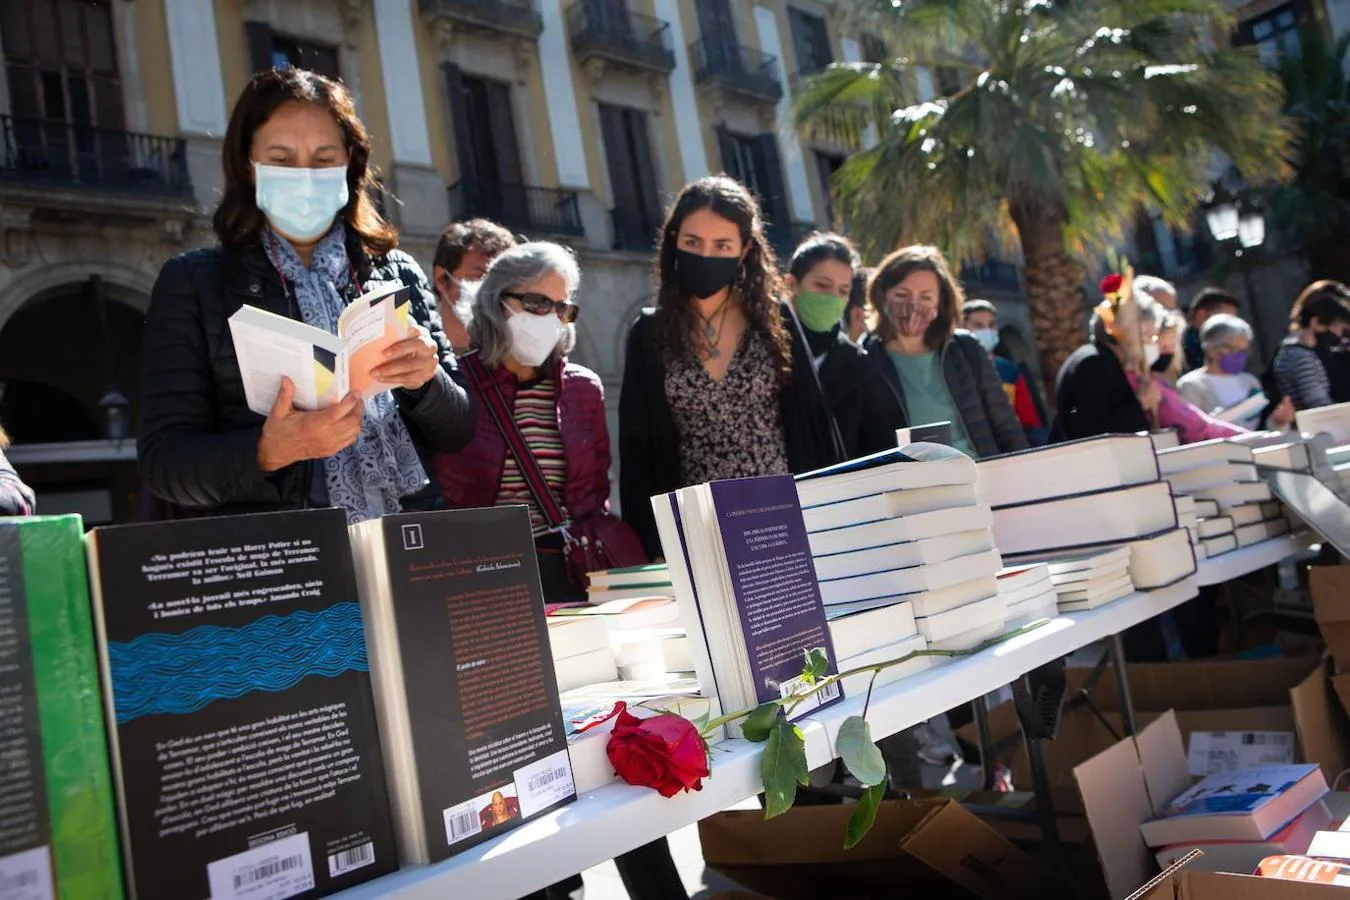 Mascarillas, distancia de seguridad y sin aglomeraciones: las imágenes de la Feria del Libro más atípica